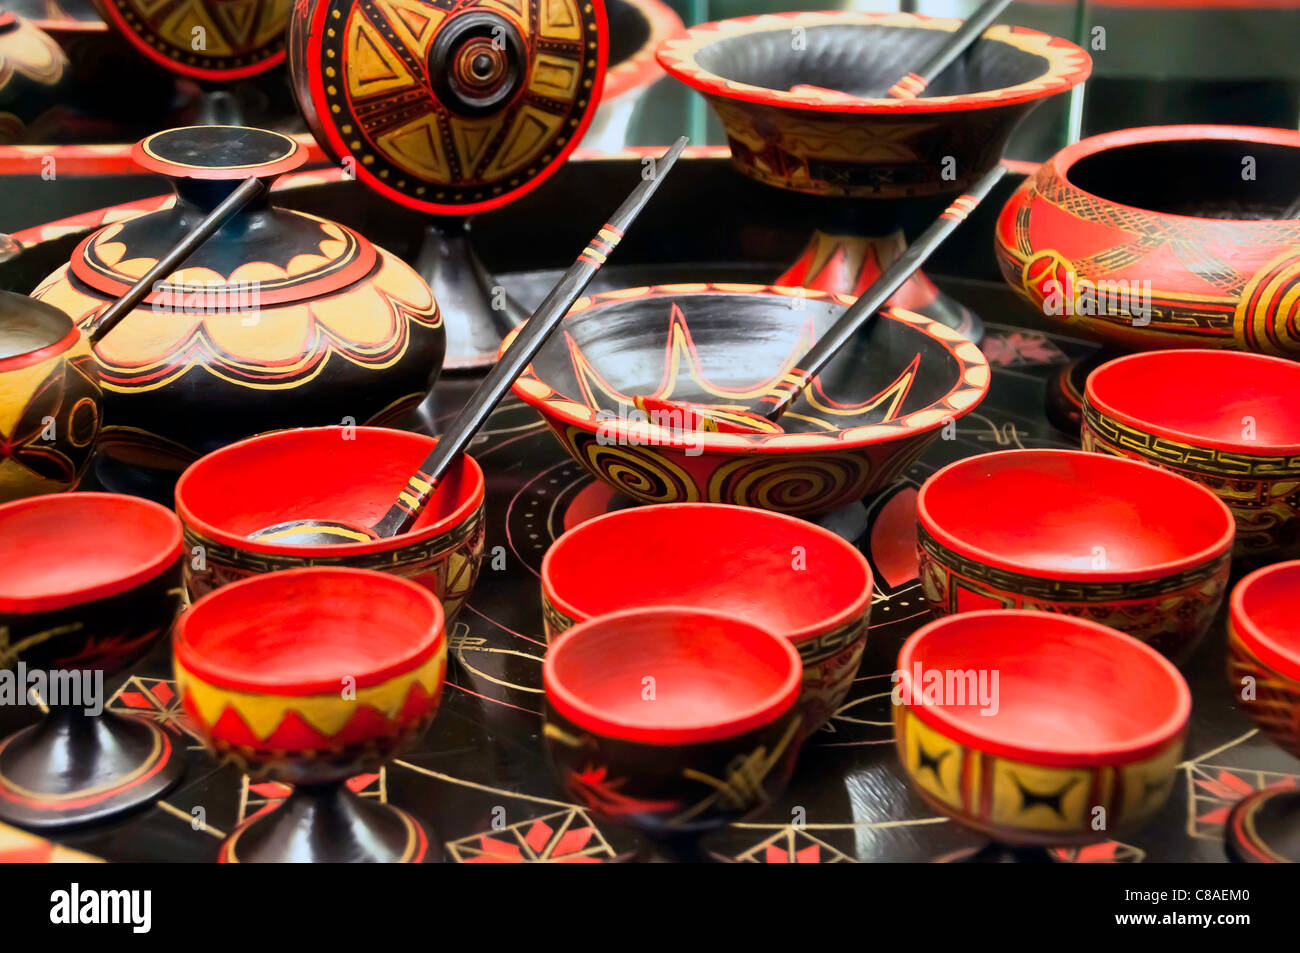 https://c8.alamy.com/comp/C8AEM0/set-of-traditional-chinese-soup-red-ceramic-pot-C8AEM0.jpg